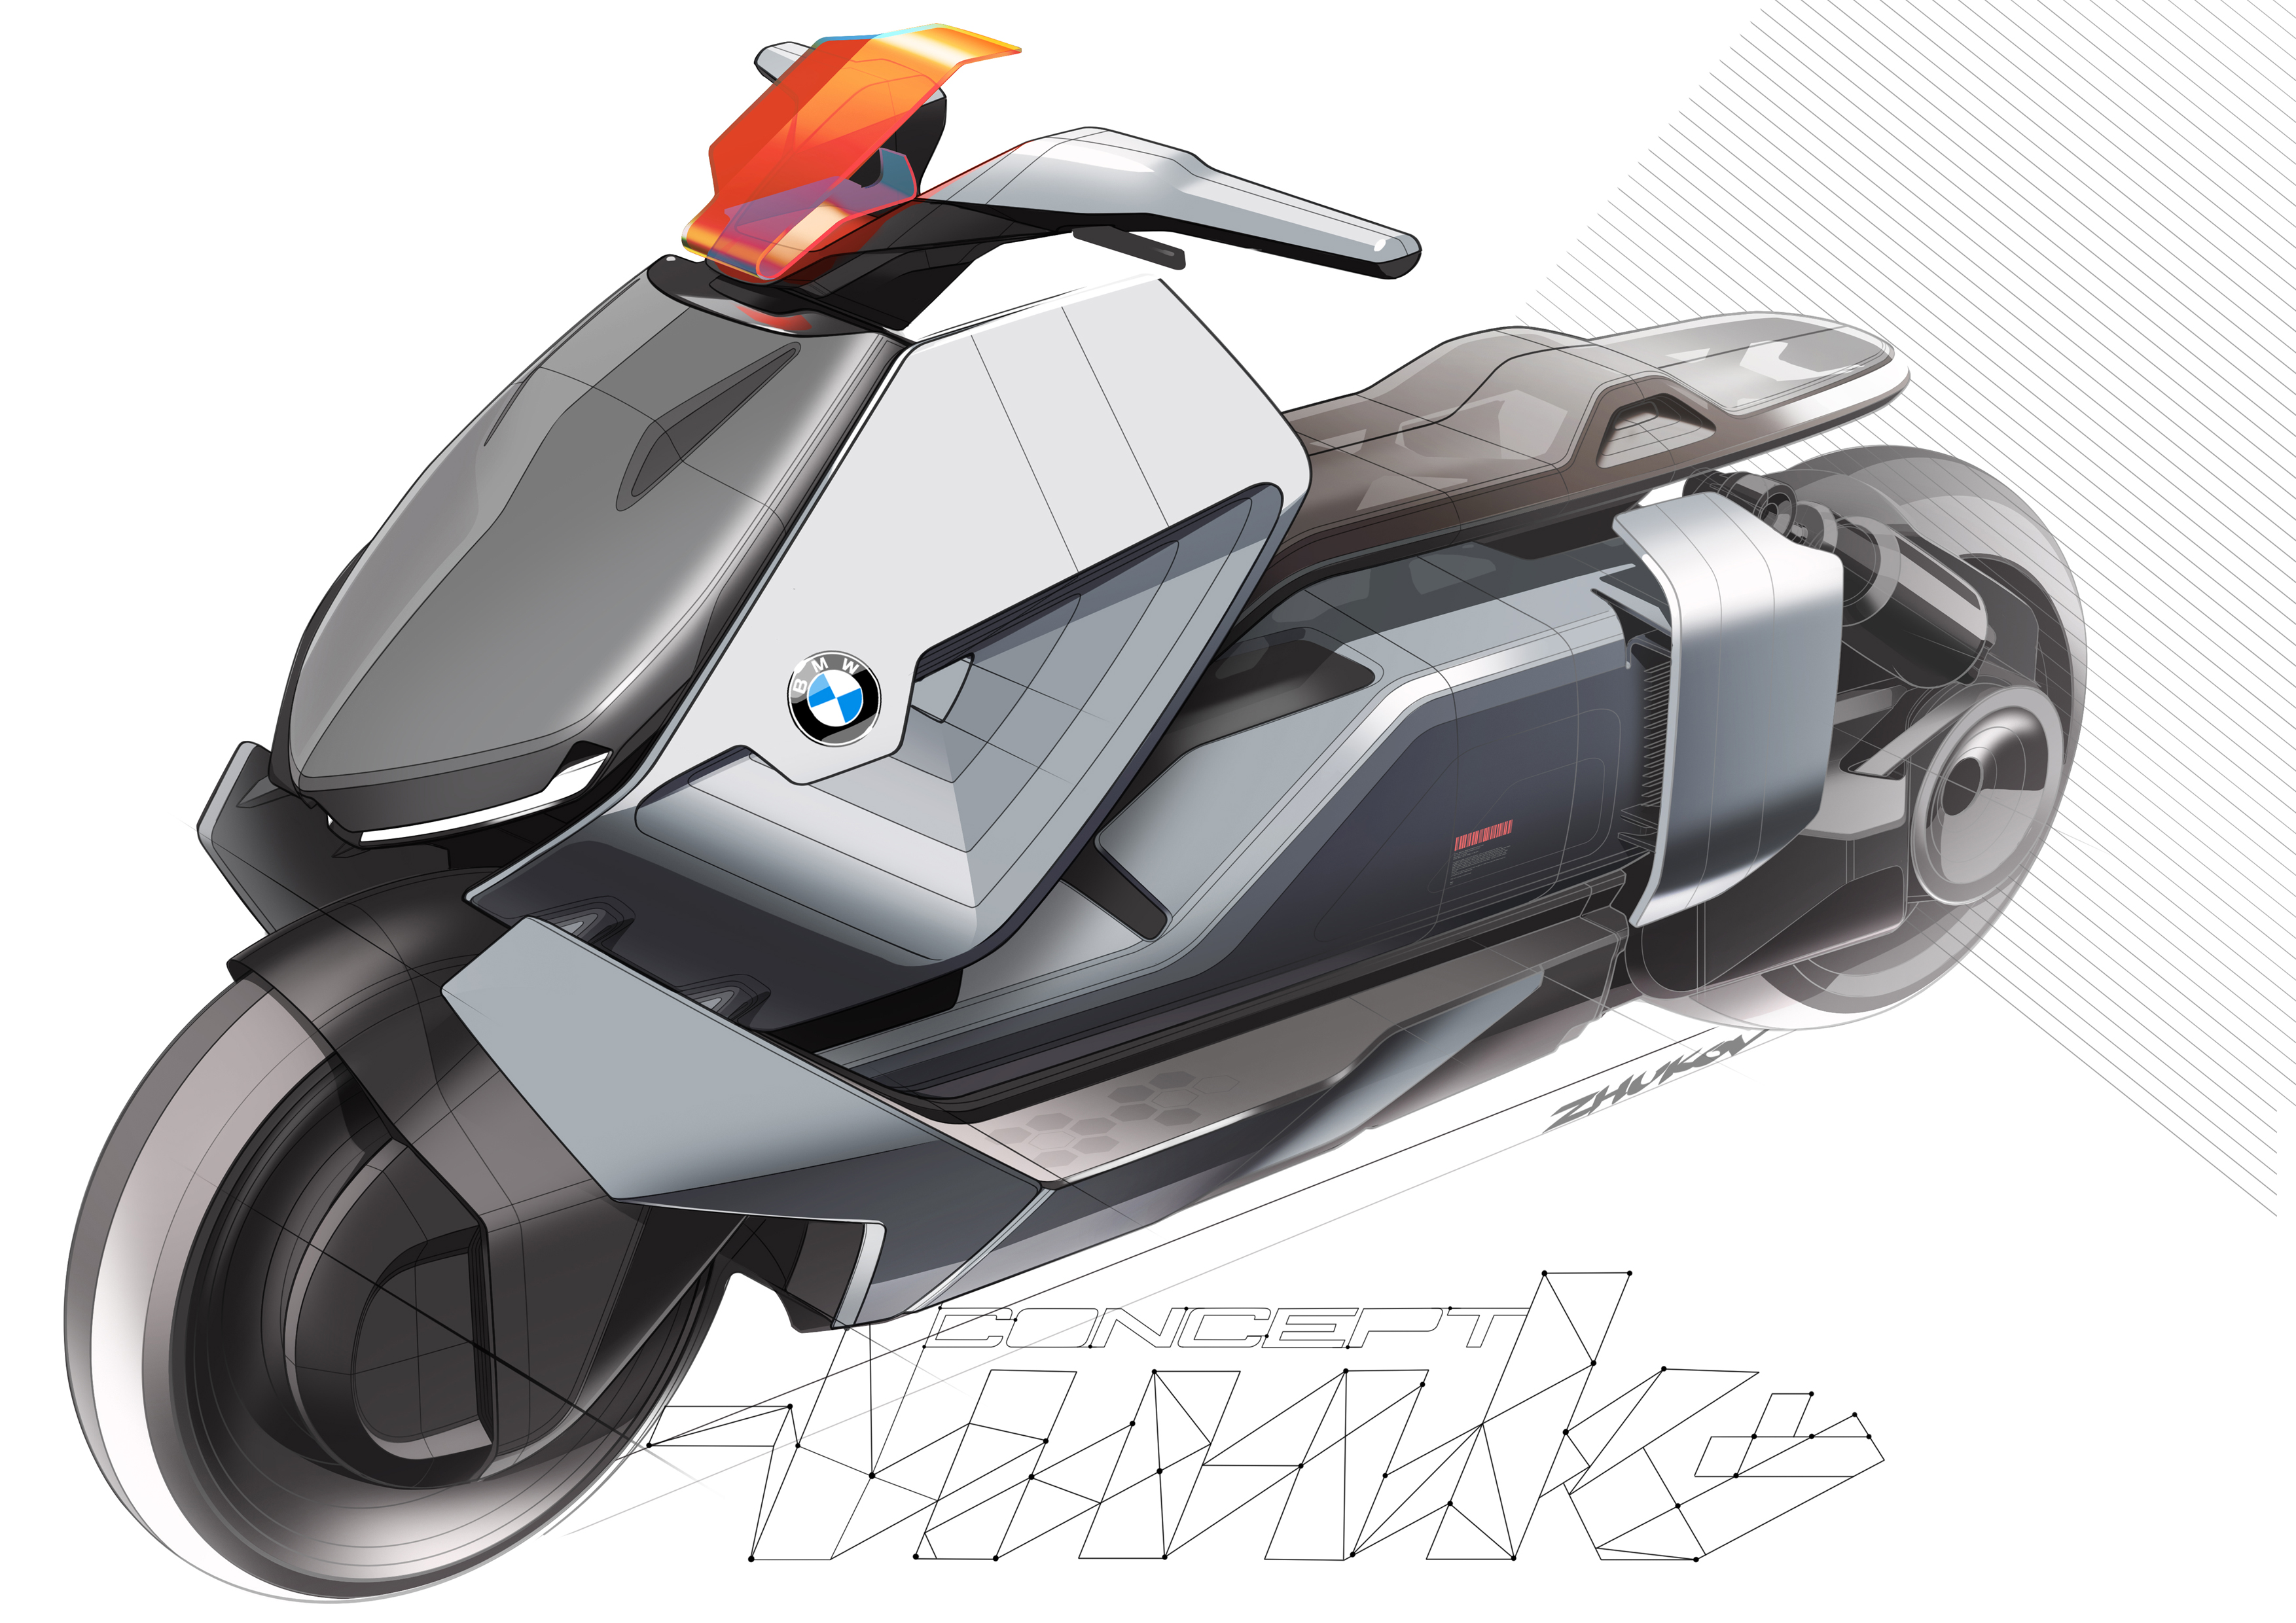 BMW Motorrad Concept Link, 2017